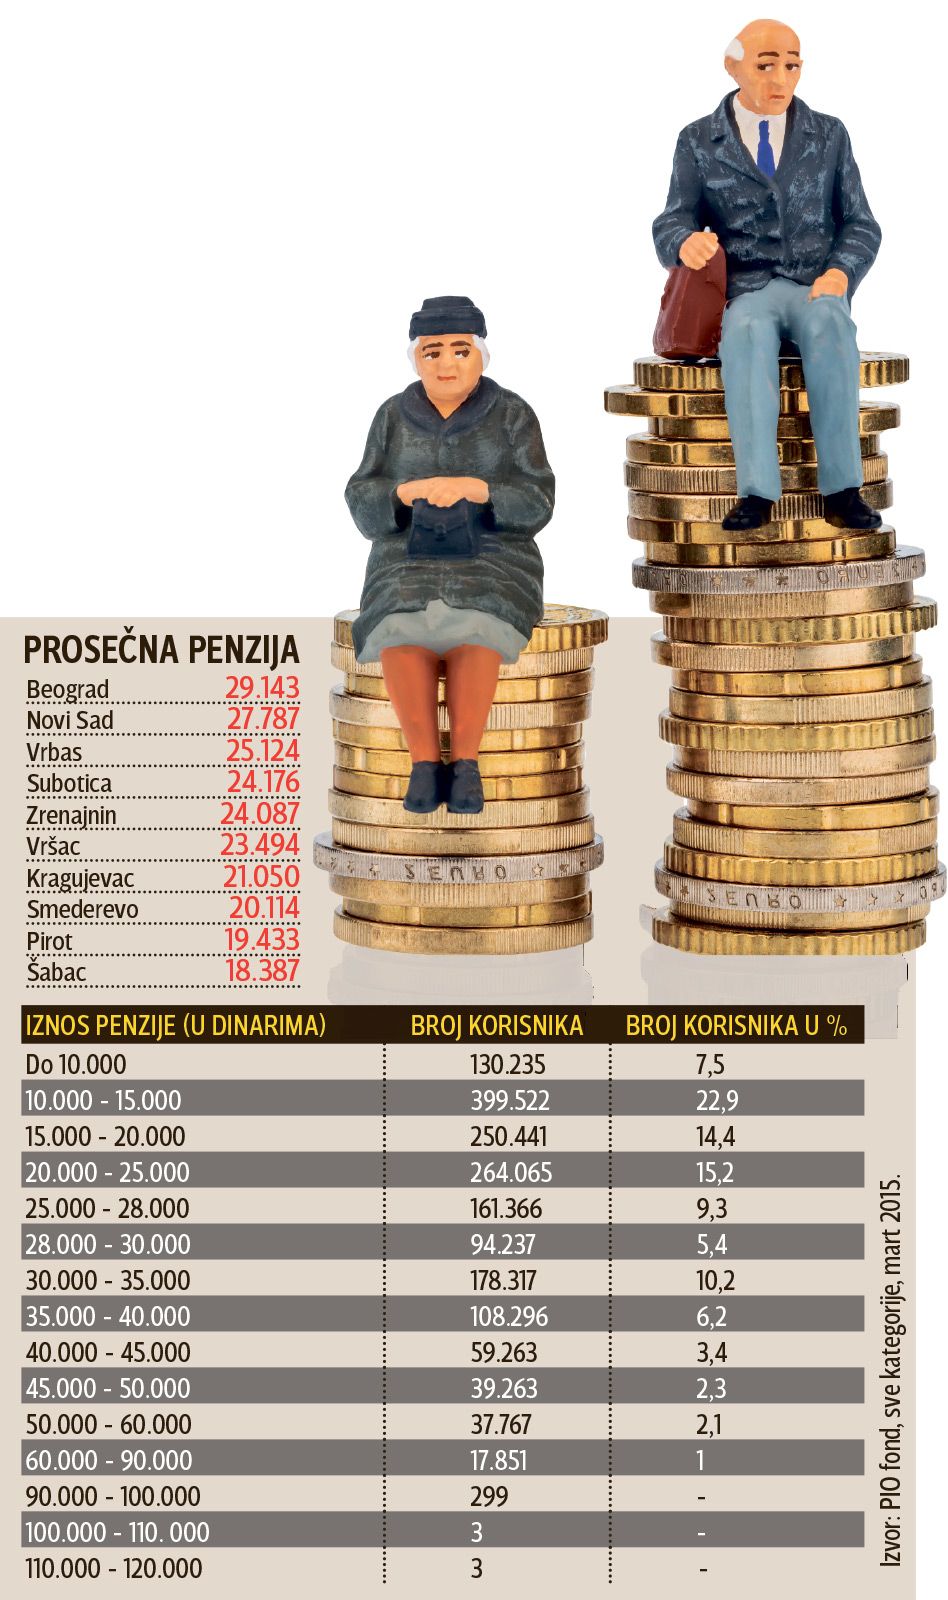 ТЕШКА БЕДА: Трећина пензионера у Србији преживљава са 15.000 динара